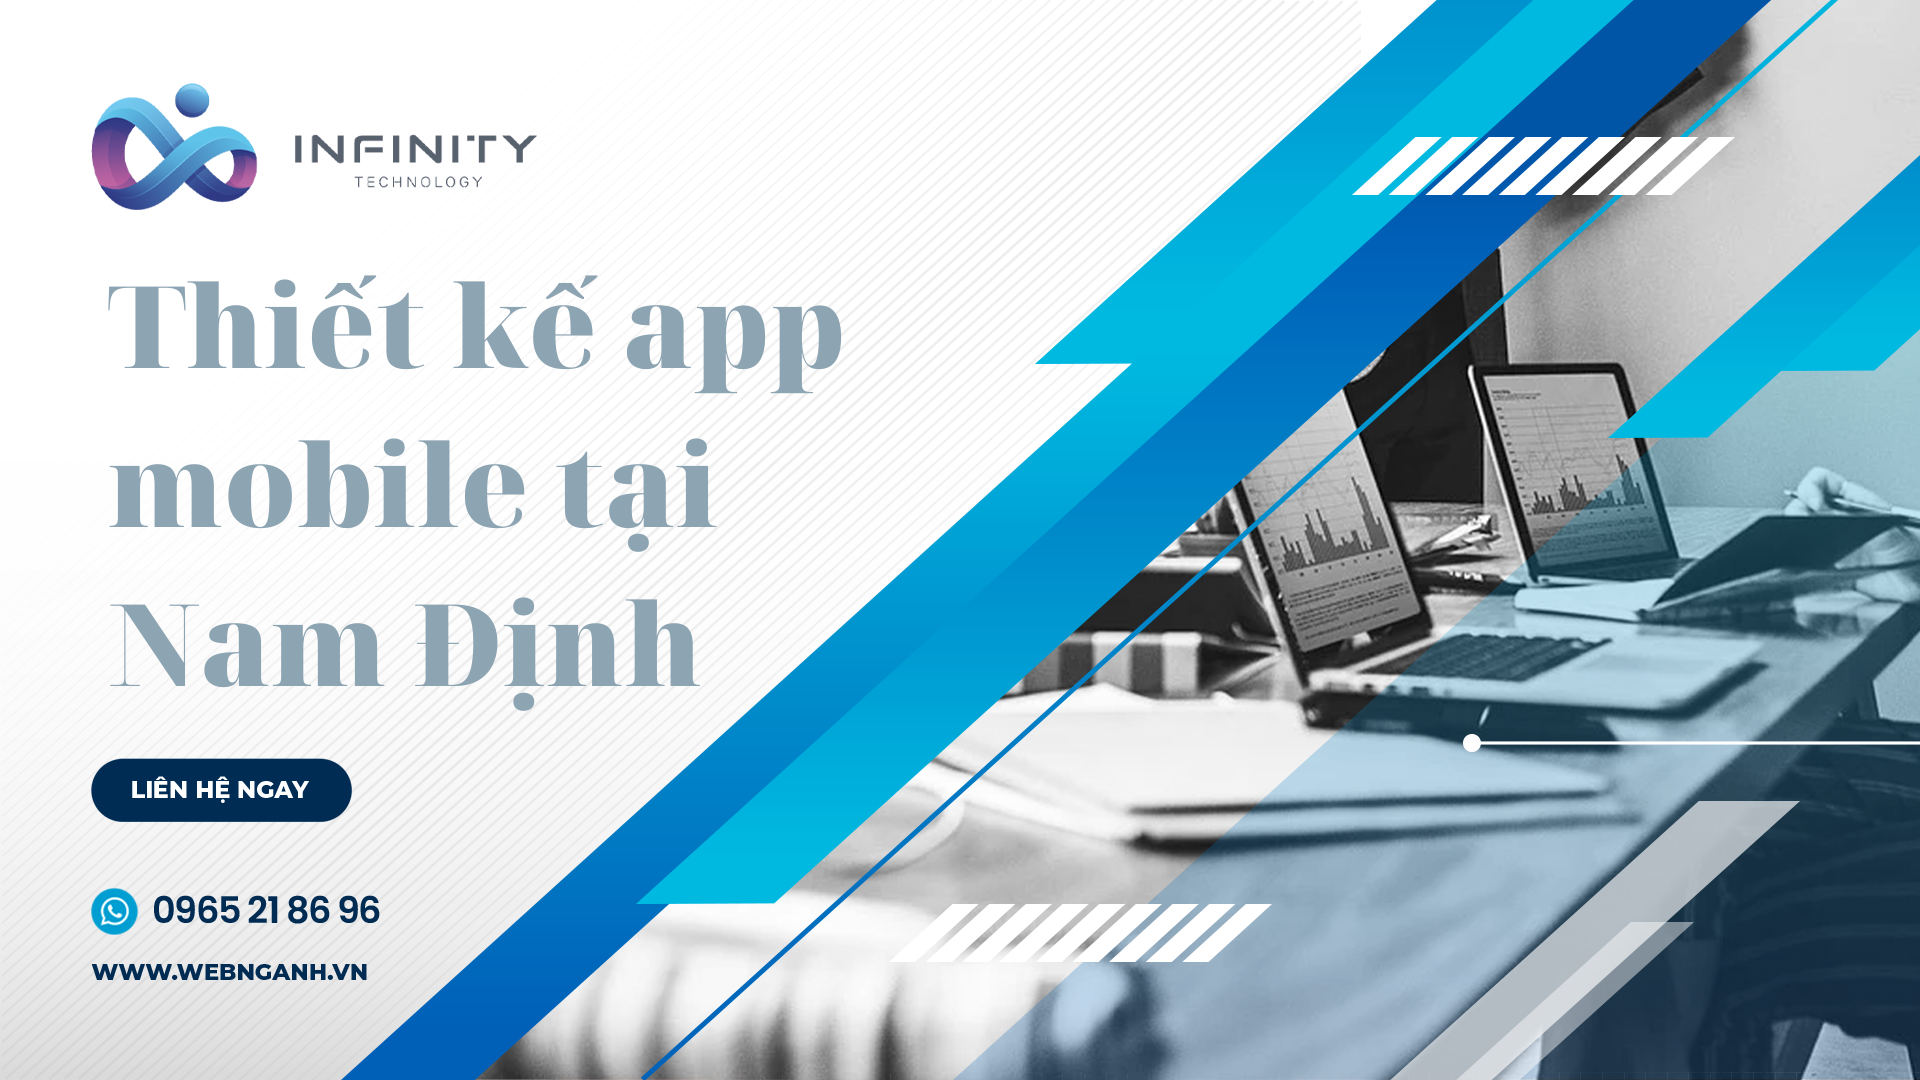 Thiết kế app mobile tại Nam Định